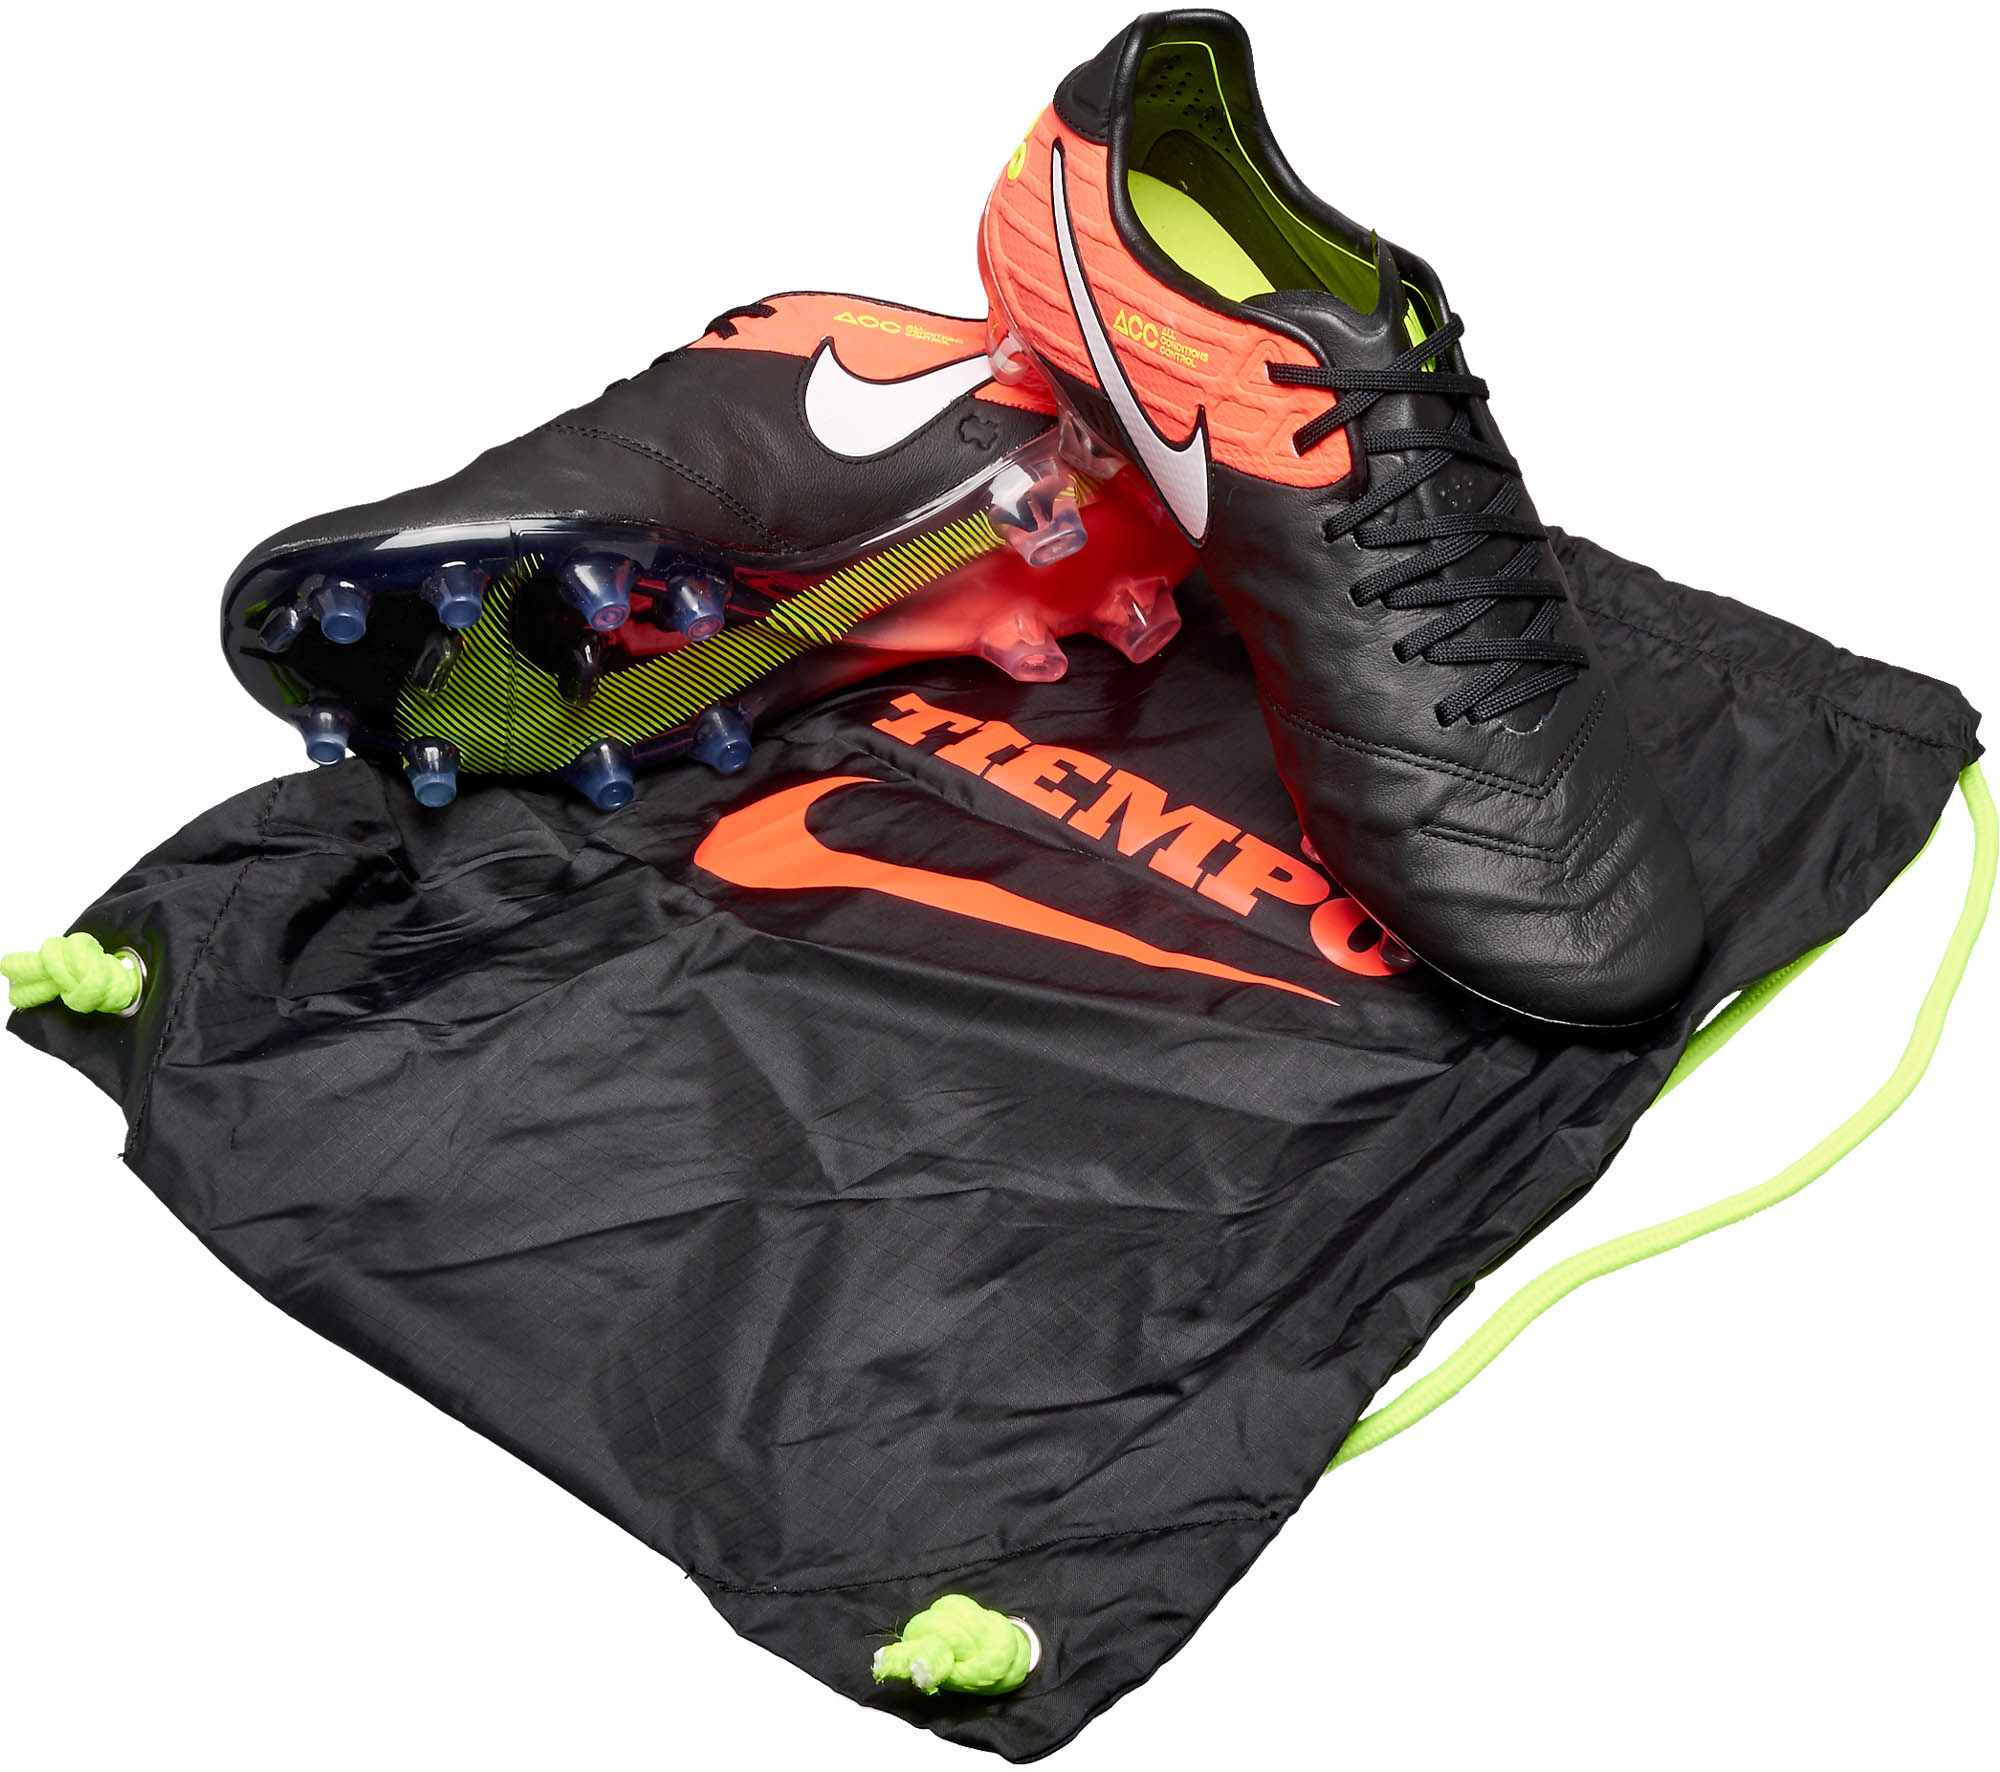 Nike Tiempo VI - Black and Orange Nike Tiempo Soccer Shoes